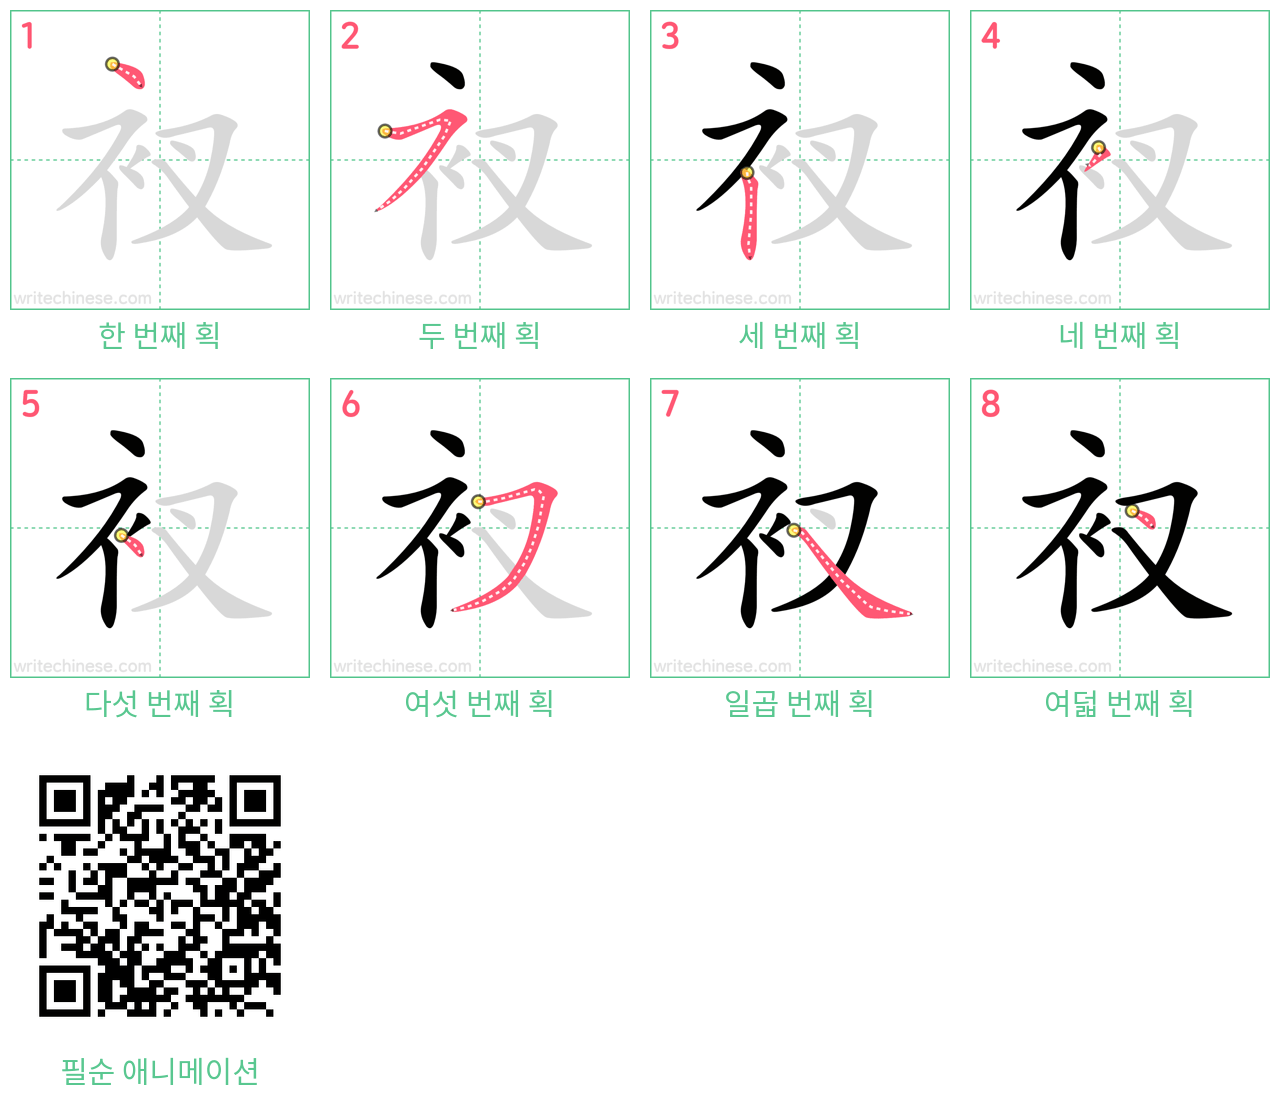 衩 step-by-step stroke order diagrams